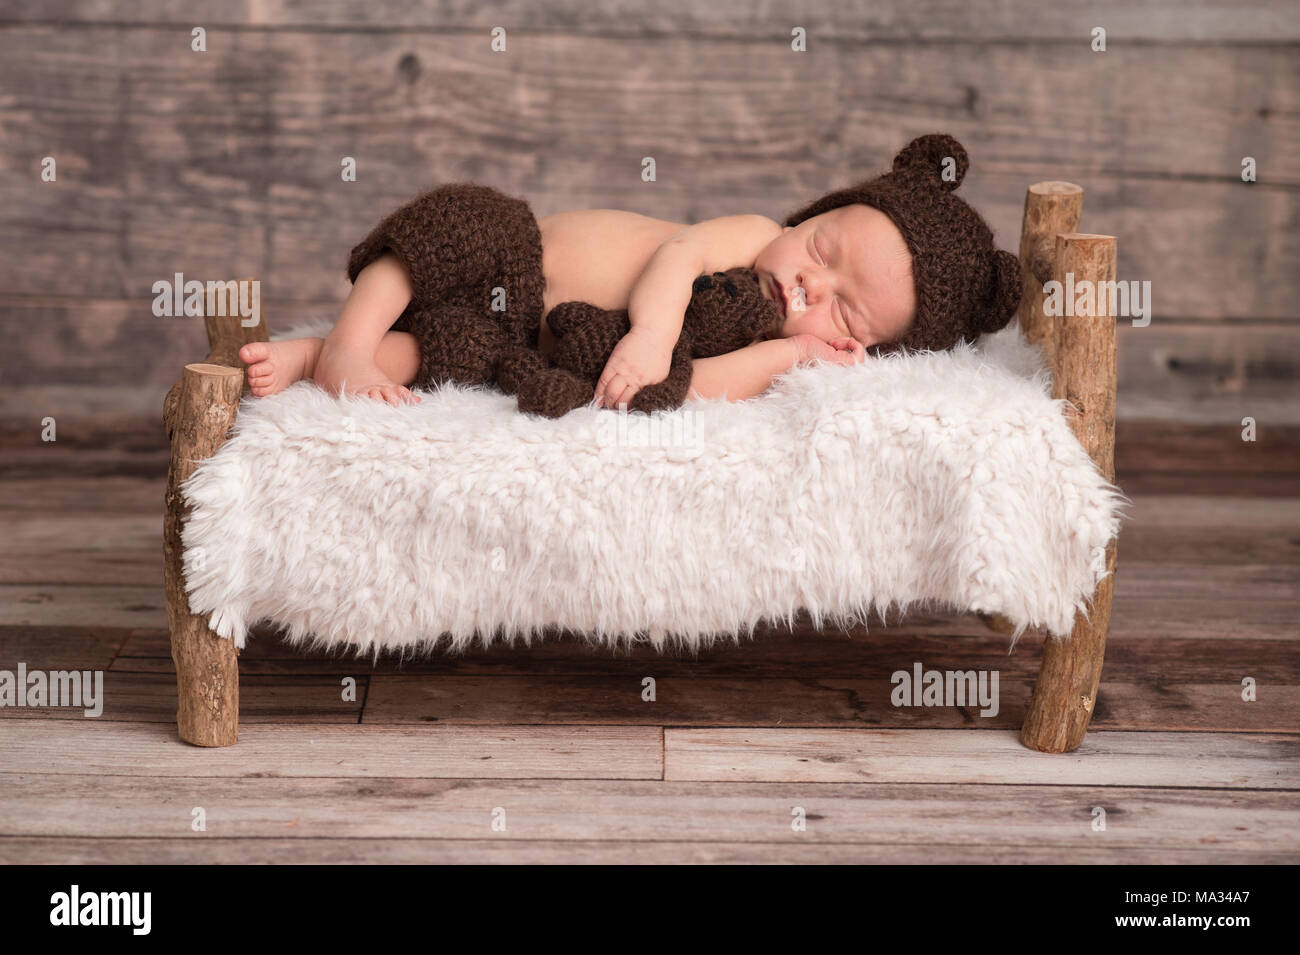 Deux semaines de bébé nouveau-né garçon portant un ours brun, moufles,  bonnet. Il est en train de dormir sur un petit lit en bois, et de câliner  un animal en peluche Photo